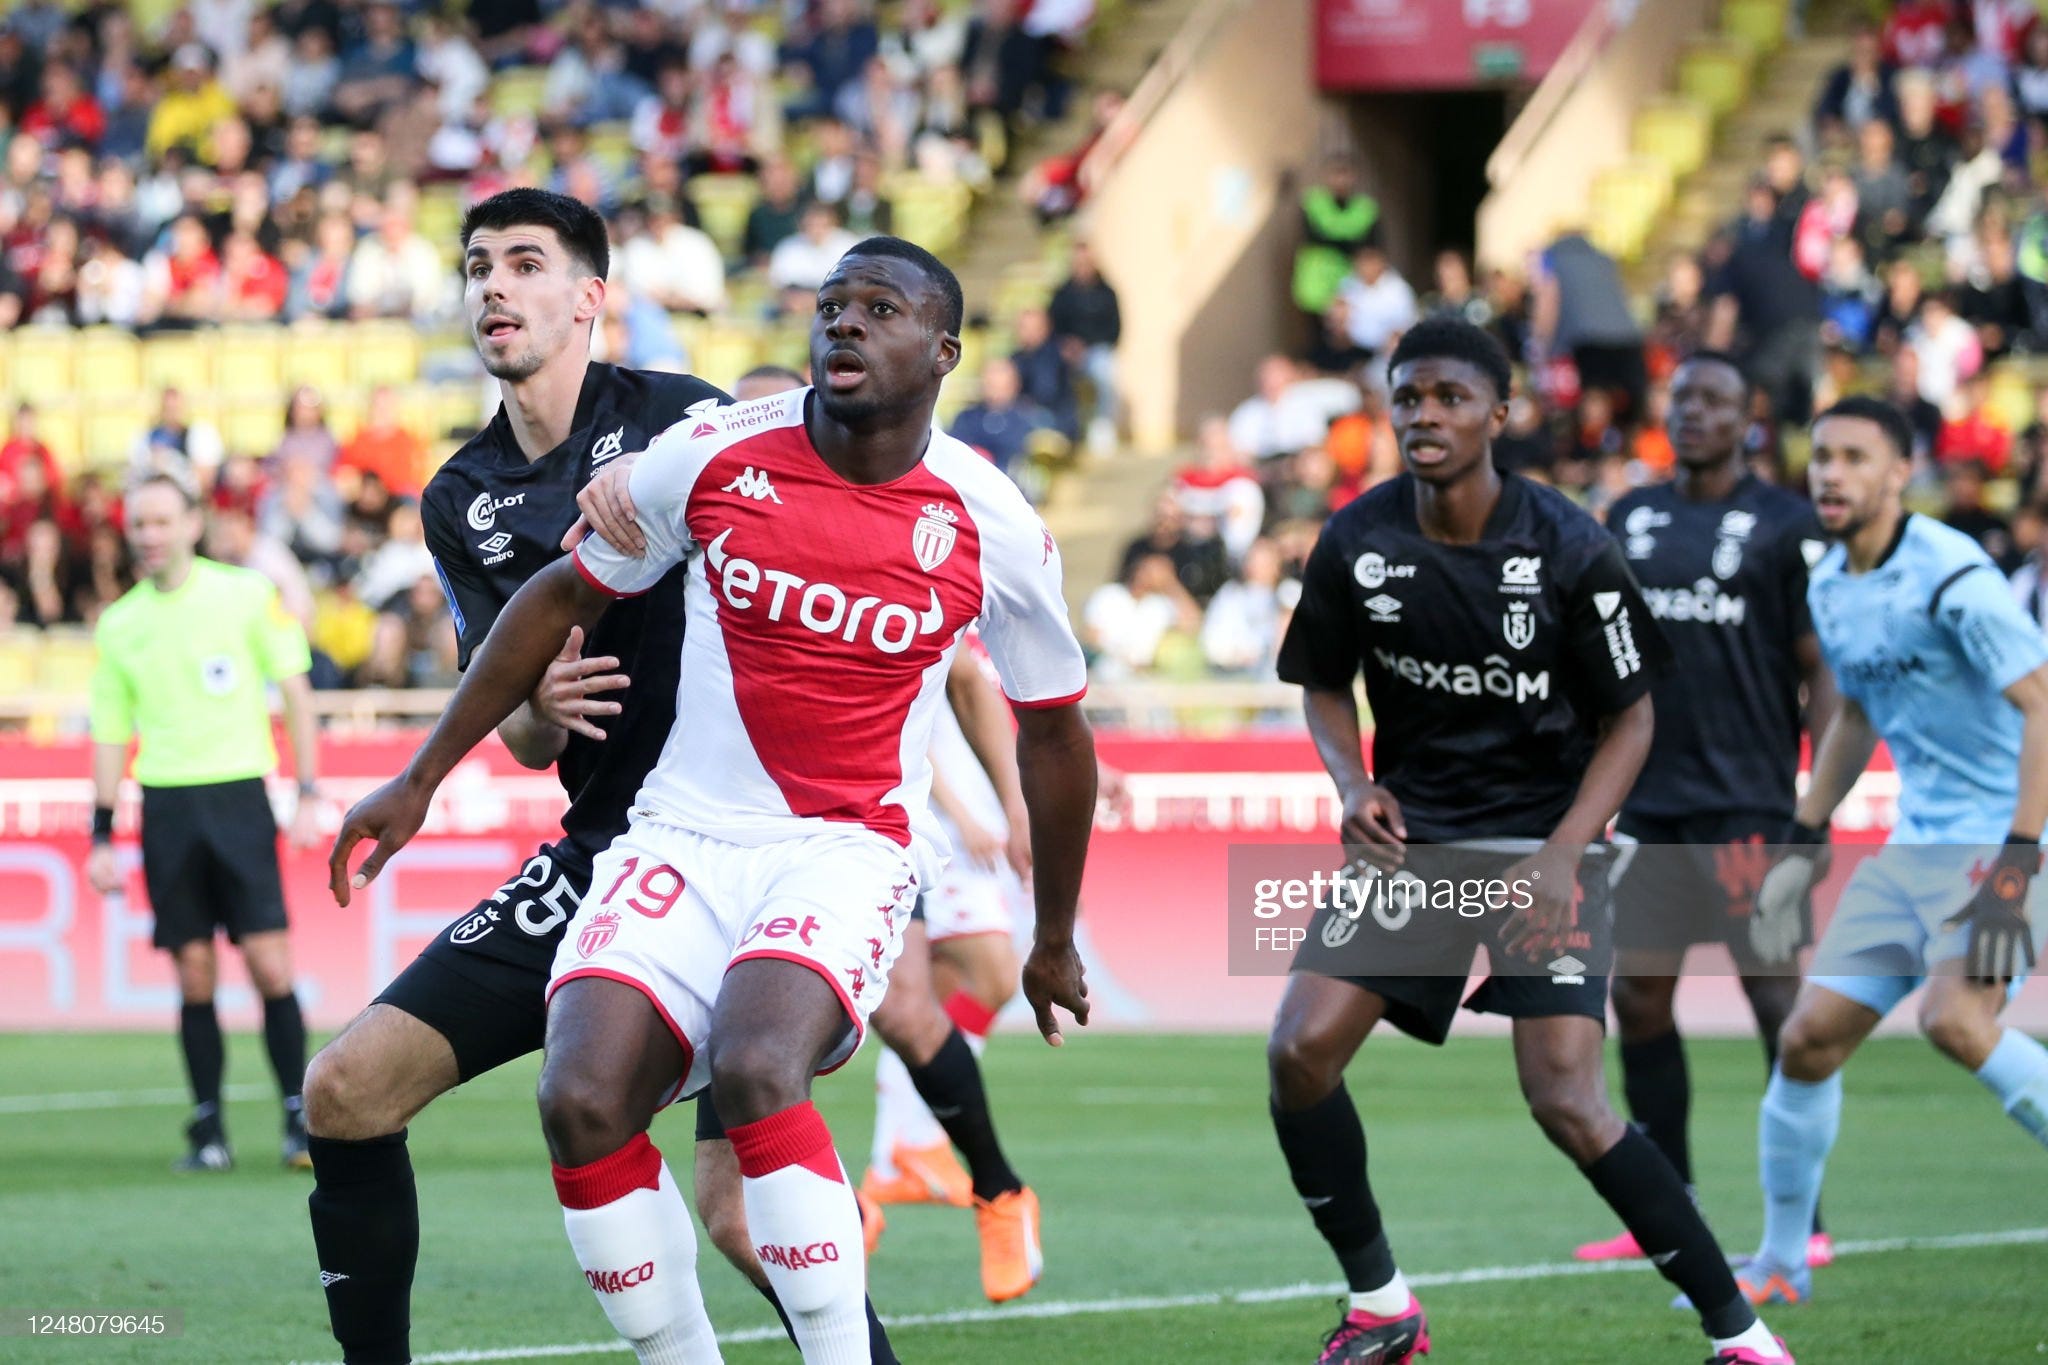 Association Sportive Monaco v Stade de Reims - Ligue 1 Uber Eats